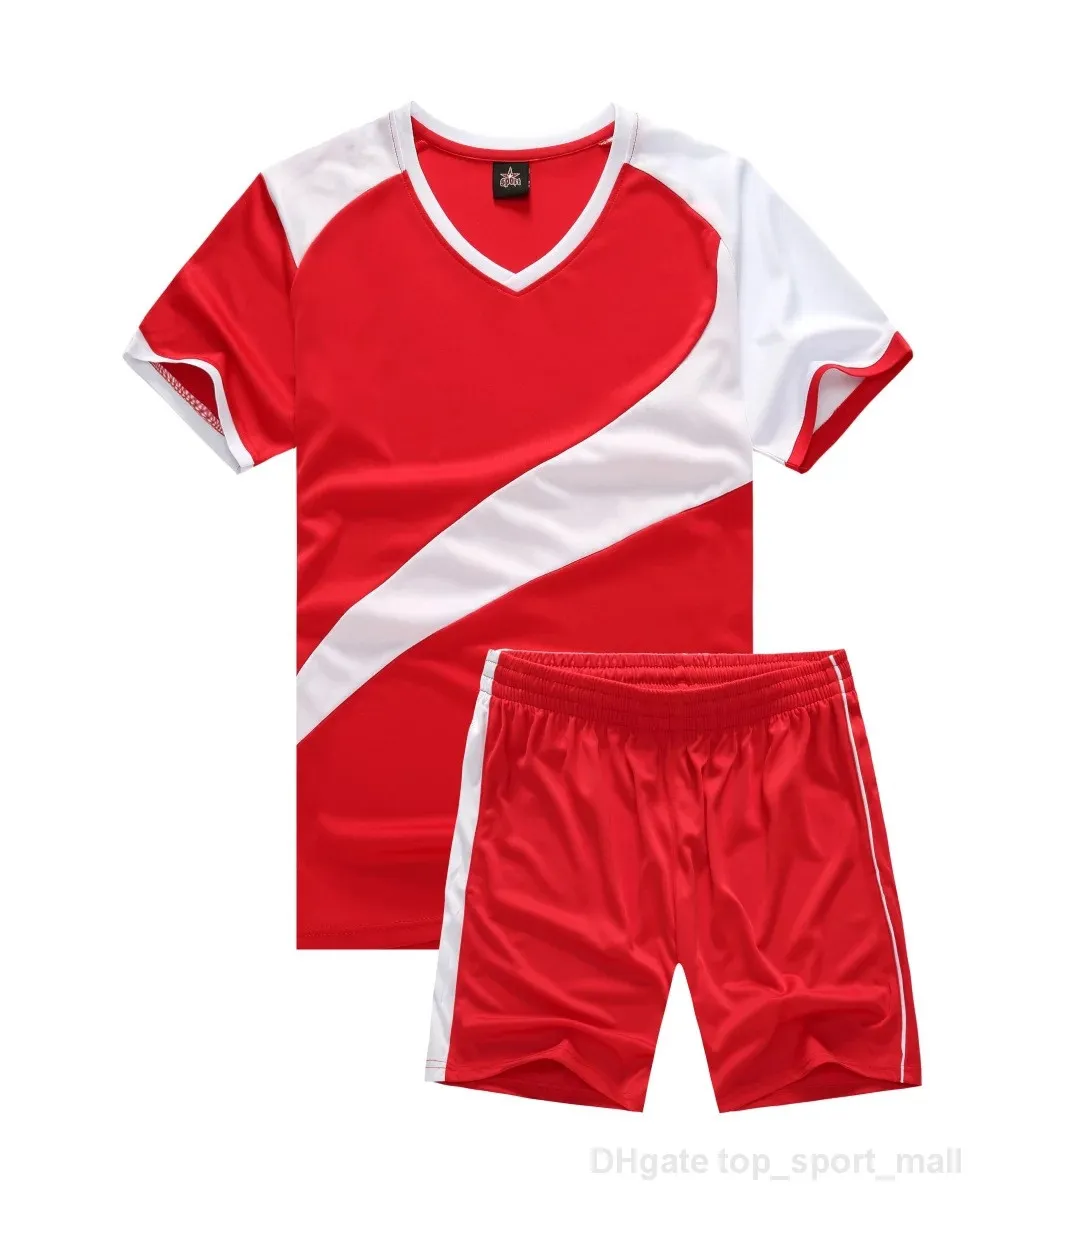 Kits de futebol de camisa de futebol cor azul branco preto vermelho 258562447